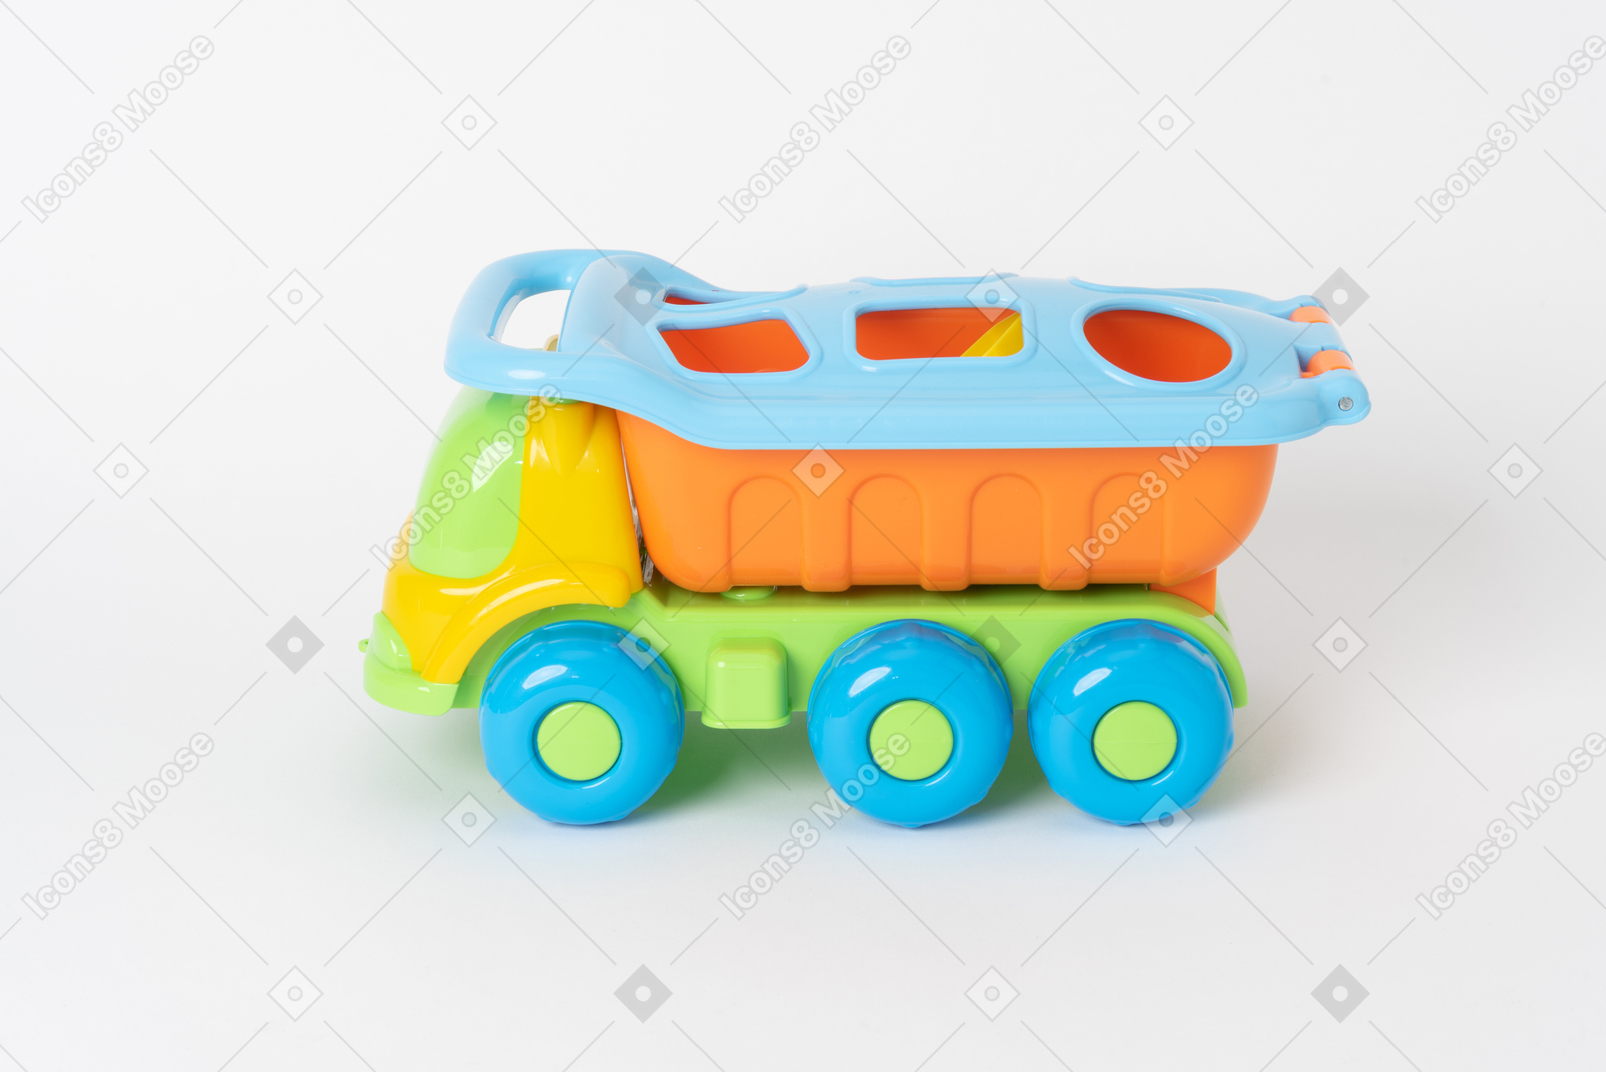 Um caminhão de brinquedo colorido em pé contra um fundo branco liso